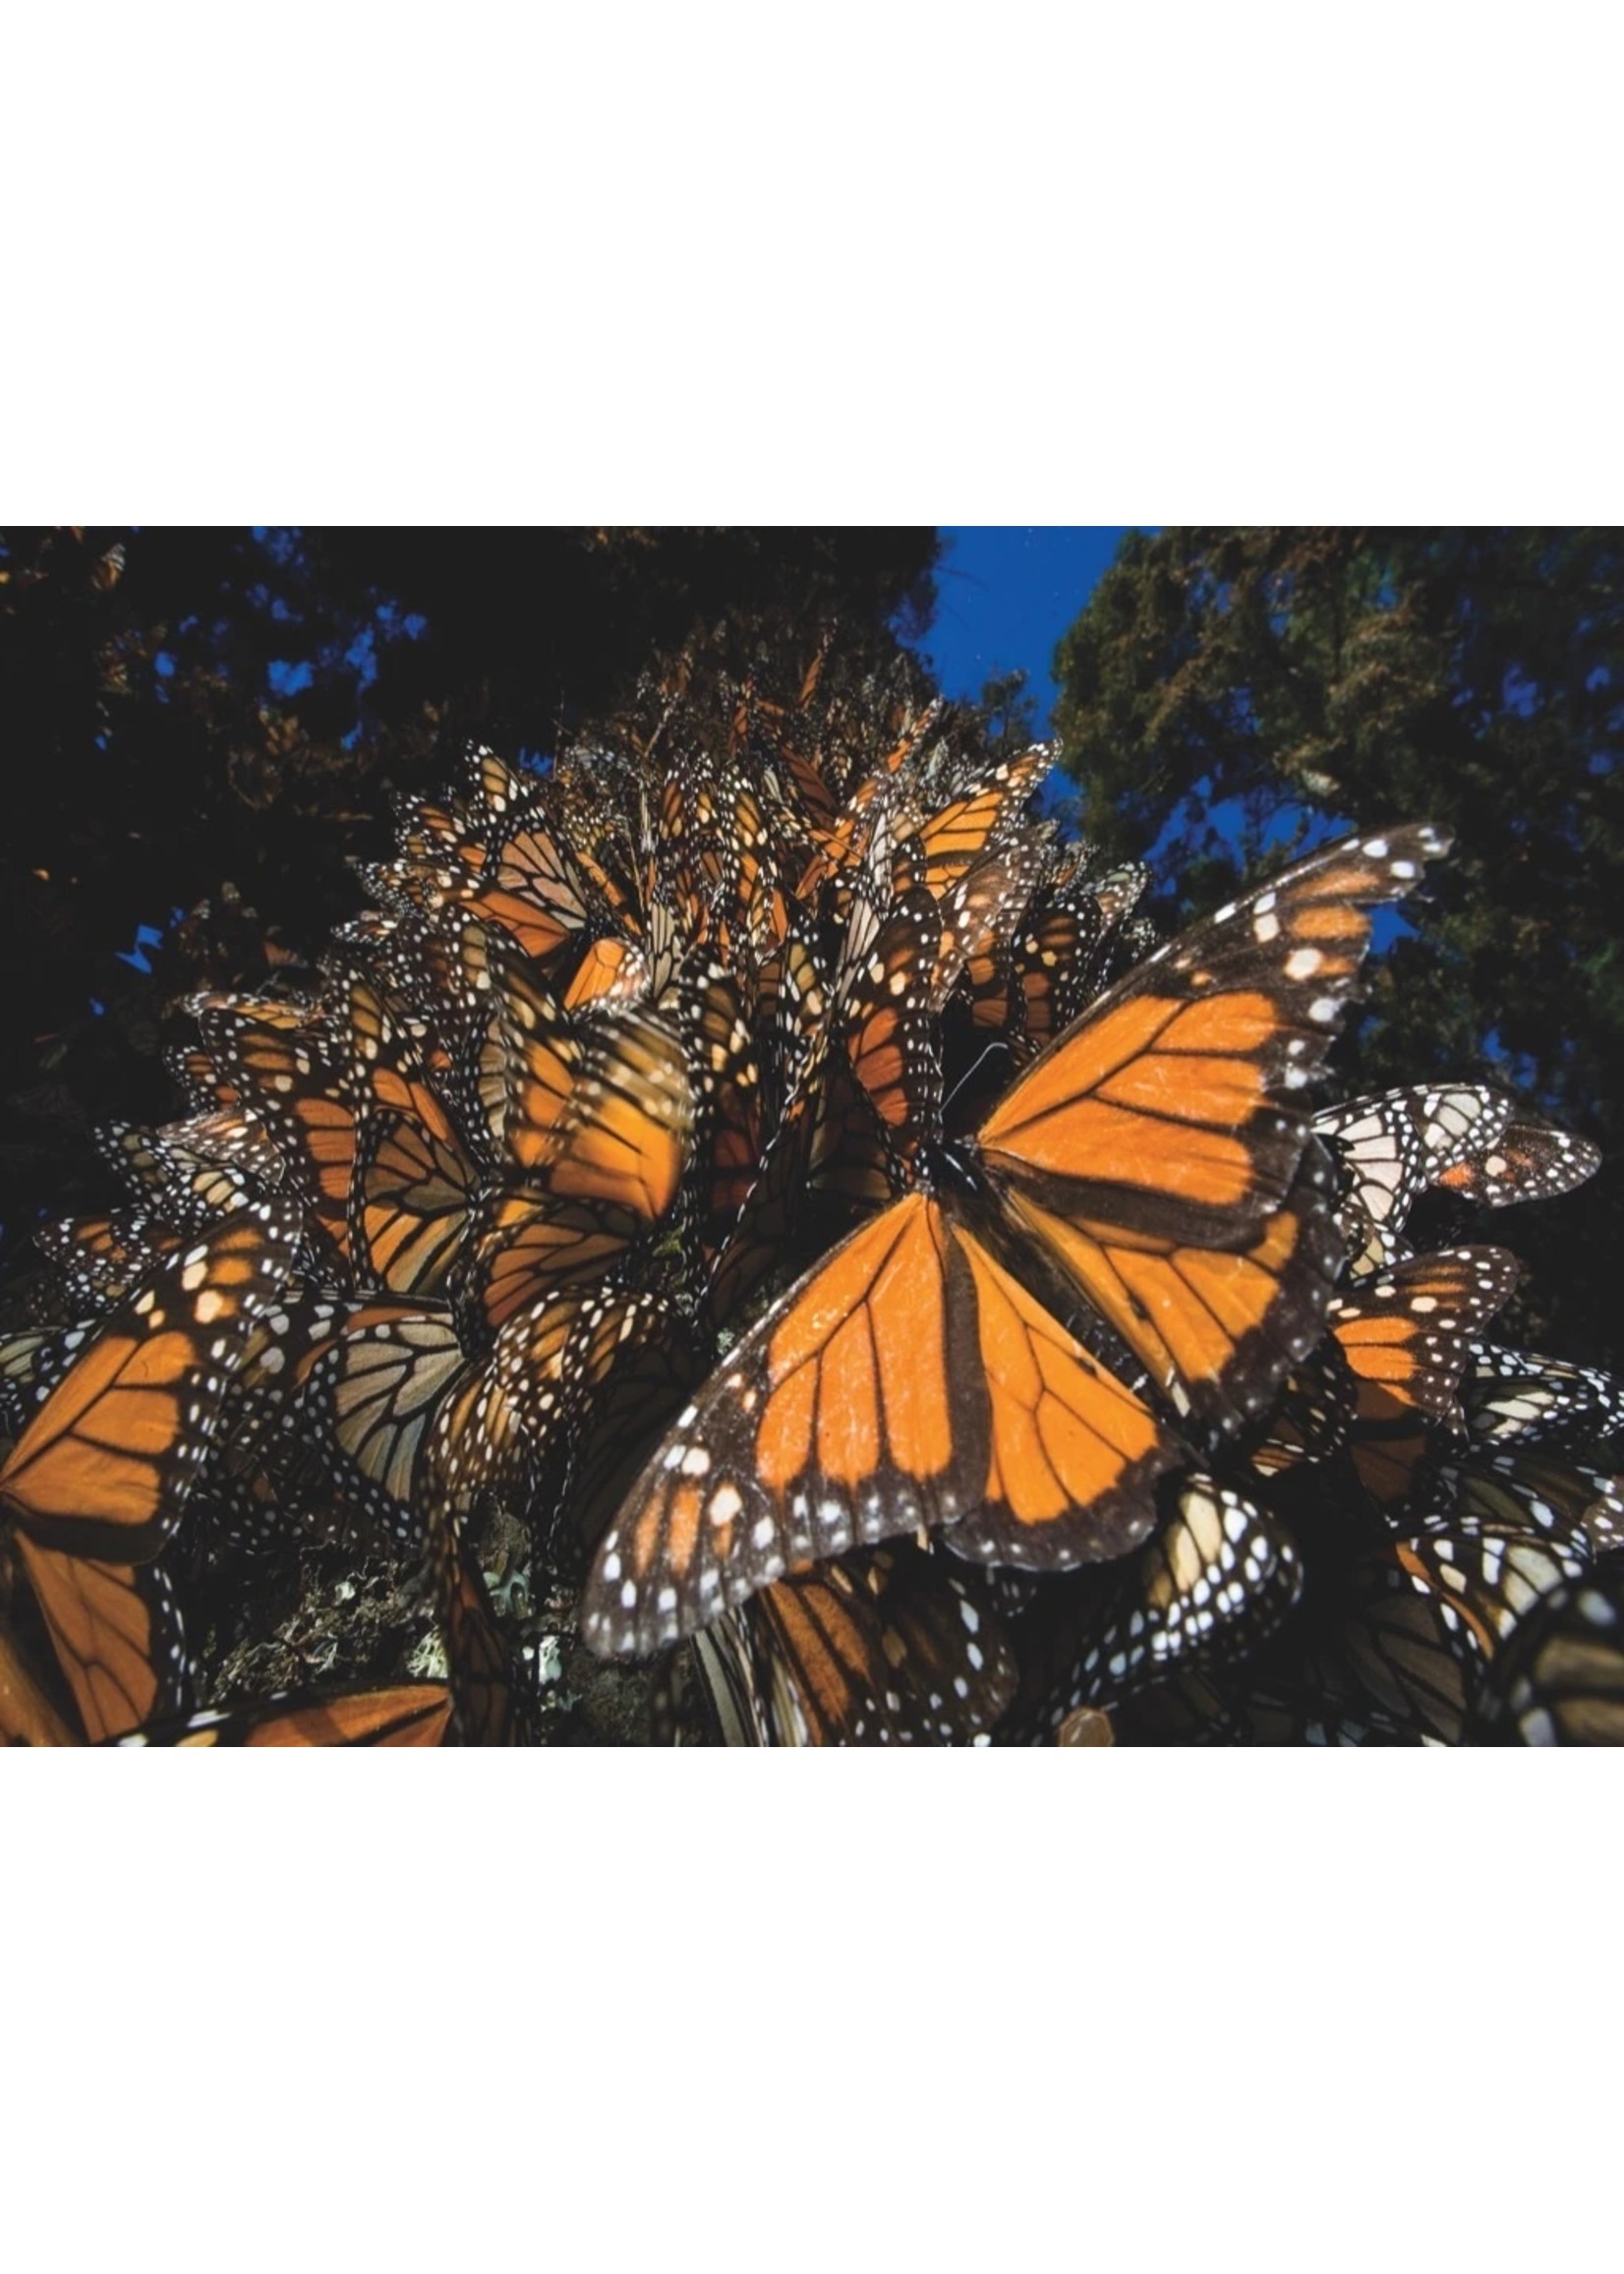 New York Puzzle Co Monarch Butterflies - 1000 Piece Puzzle